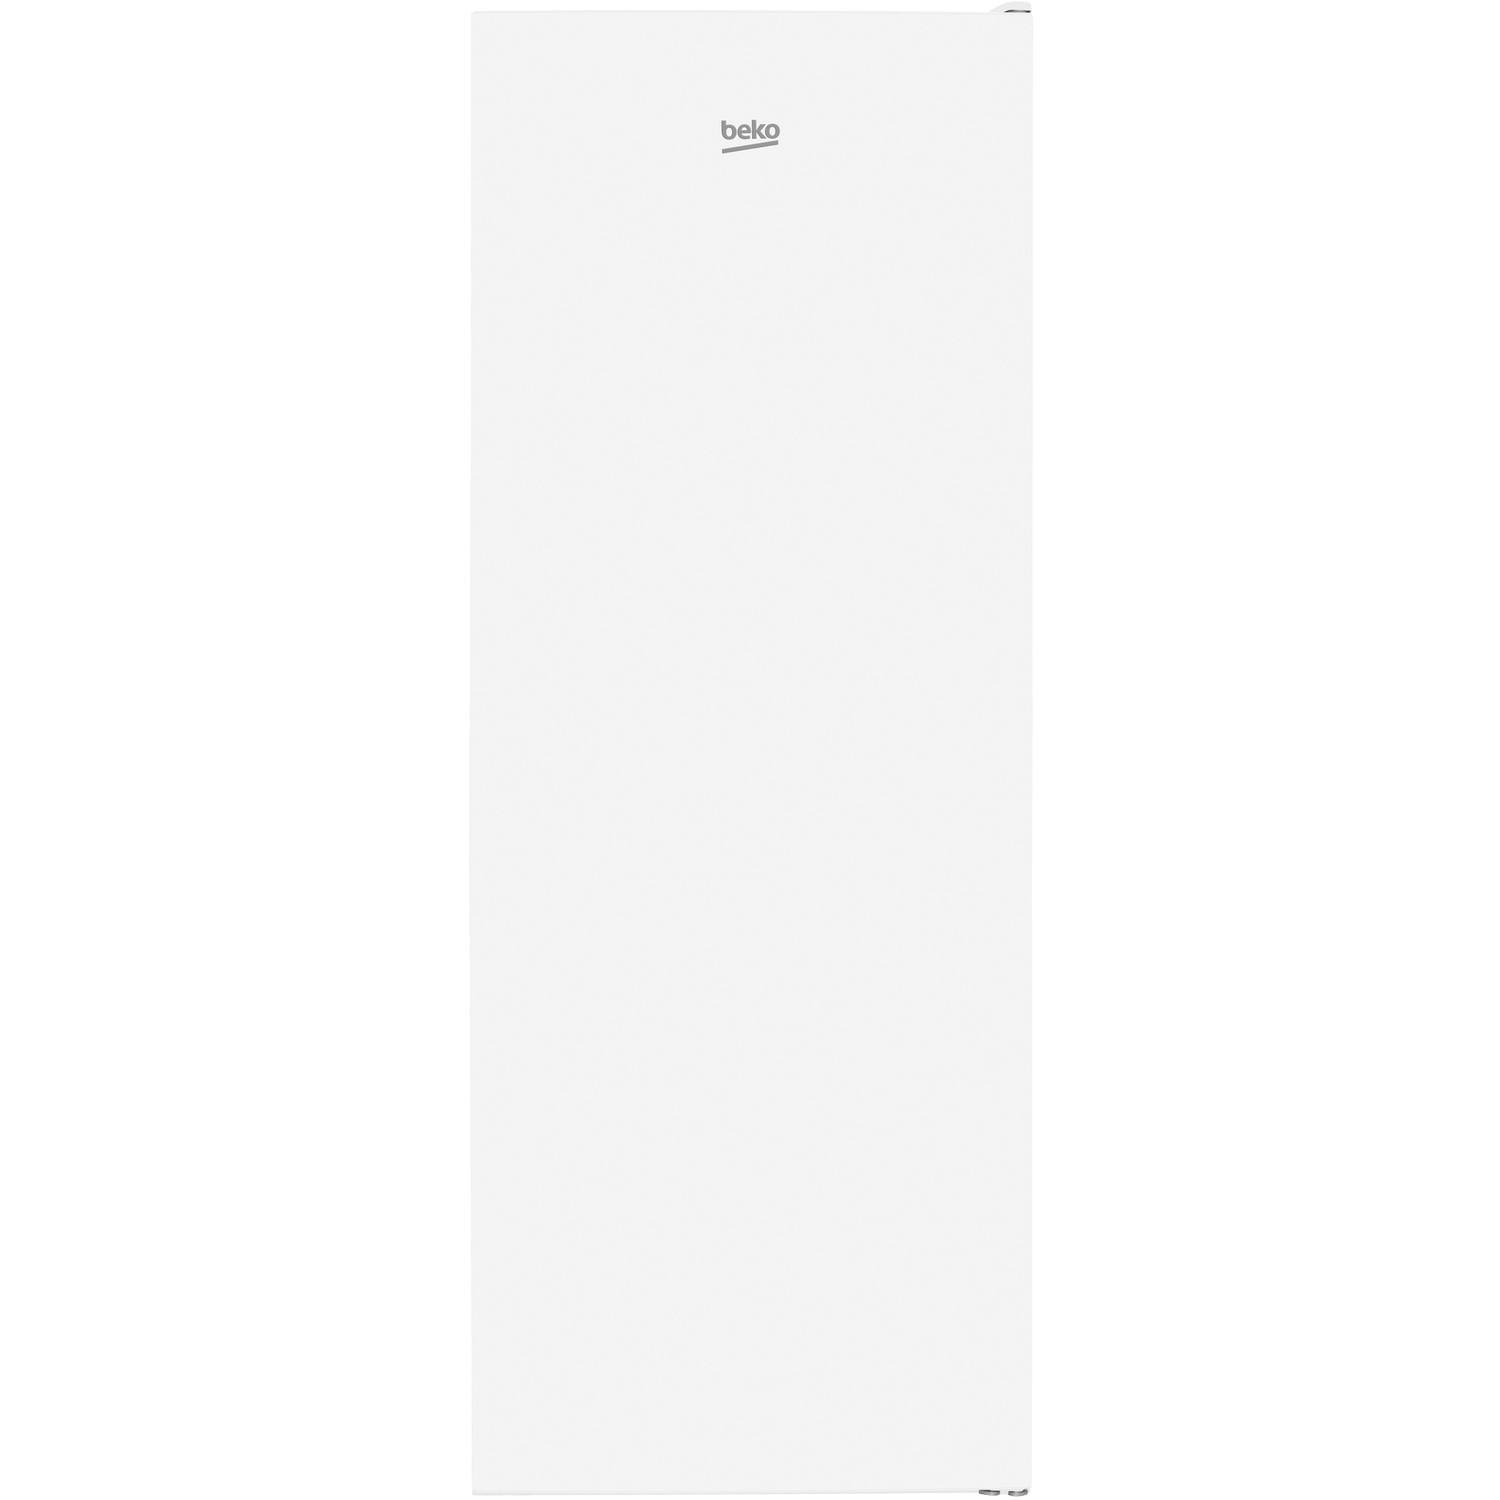 Beko 252 Litre Tall Freestanding Larder Fridge - White